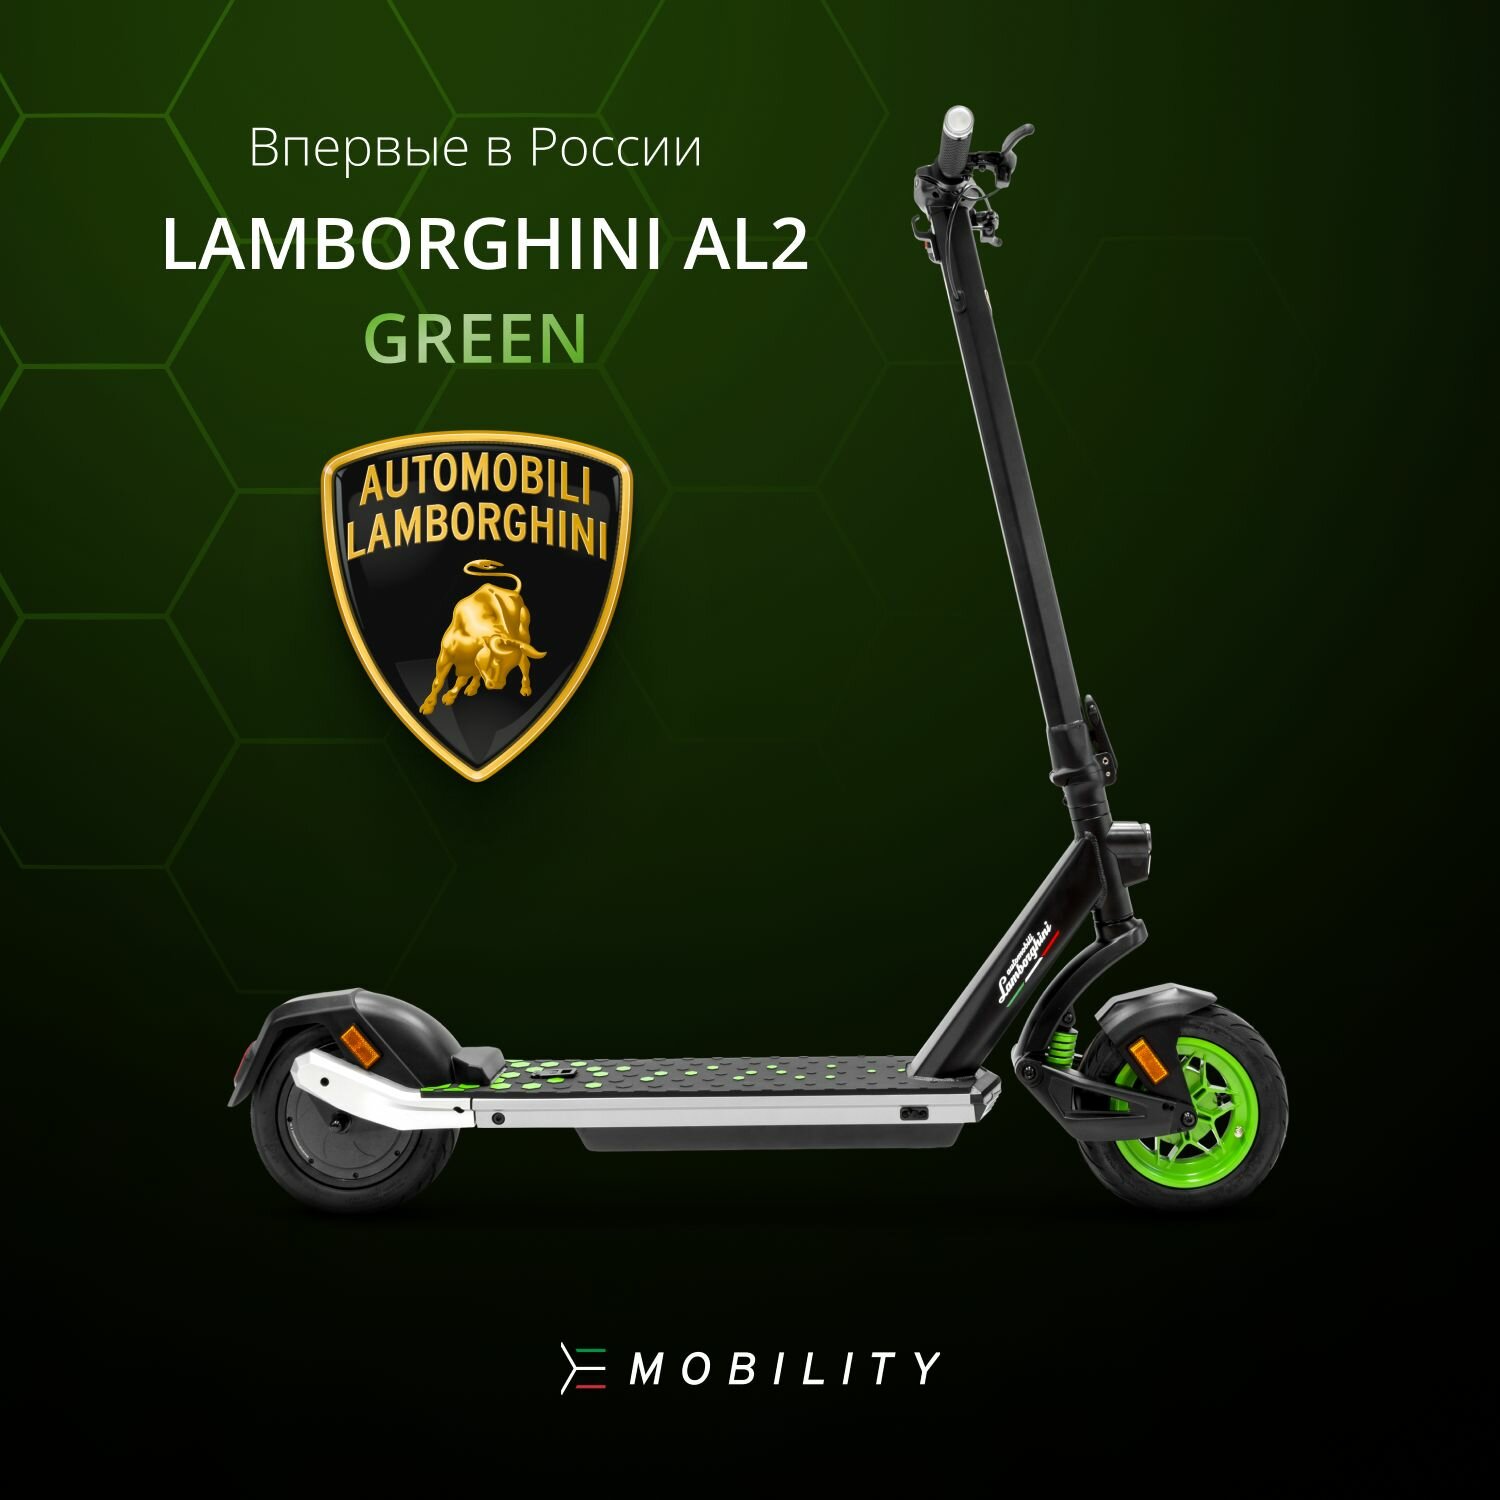 Электросамокат E-Mobility AUTOMOBILI LAMBORGHINI AL2 складной, 25 км/ч, двойная тормозная система, задняя подвеска